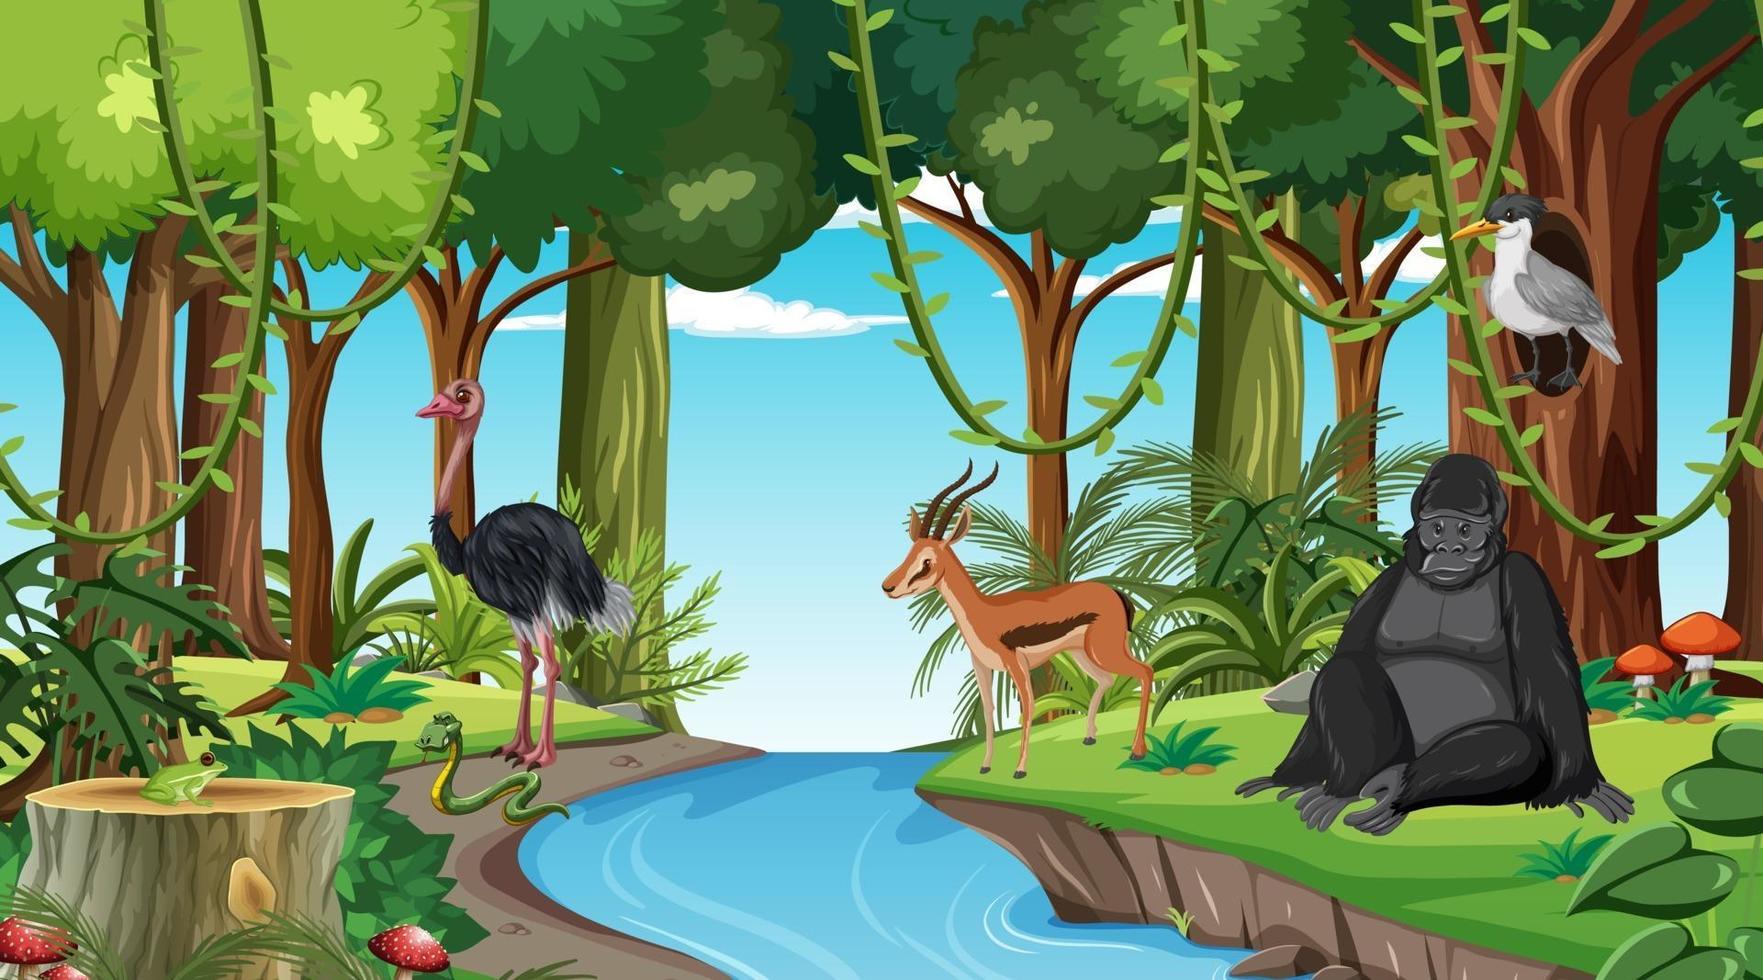 cena da floresta com diferentes animais selvagens vetor